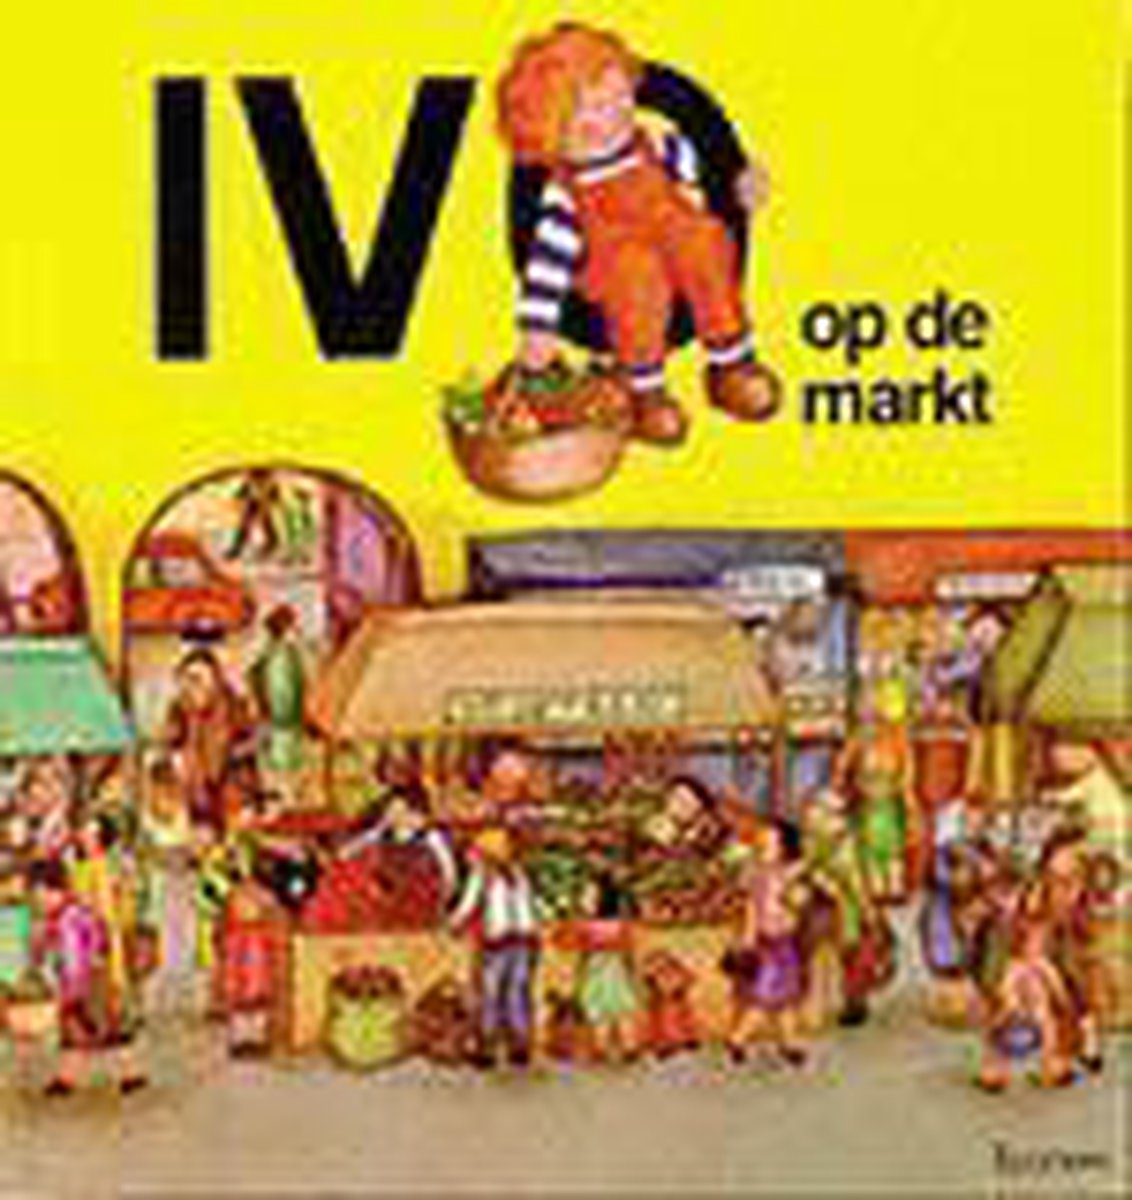 Ivo Op De Markt